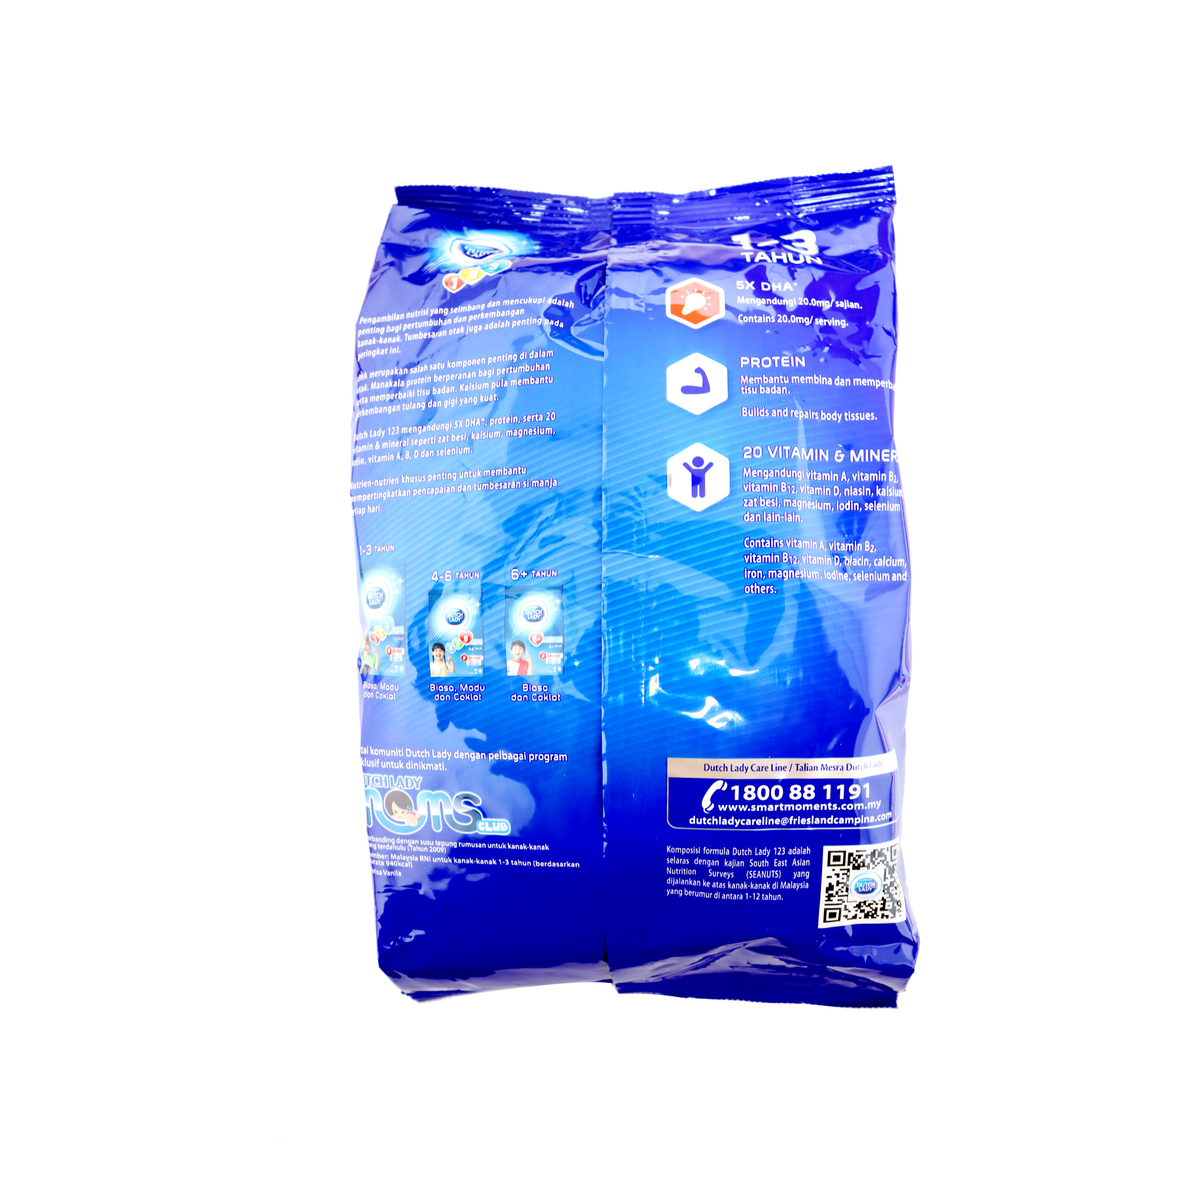 DutchLady Powder GUM 123 Pain 850g Online at Best Price | Bab.MilkPwdr ...